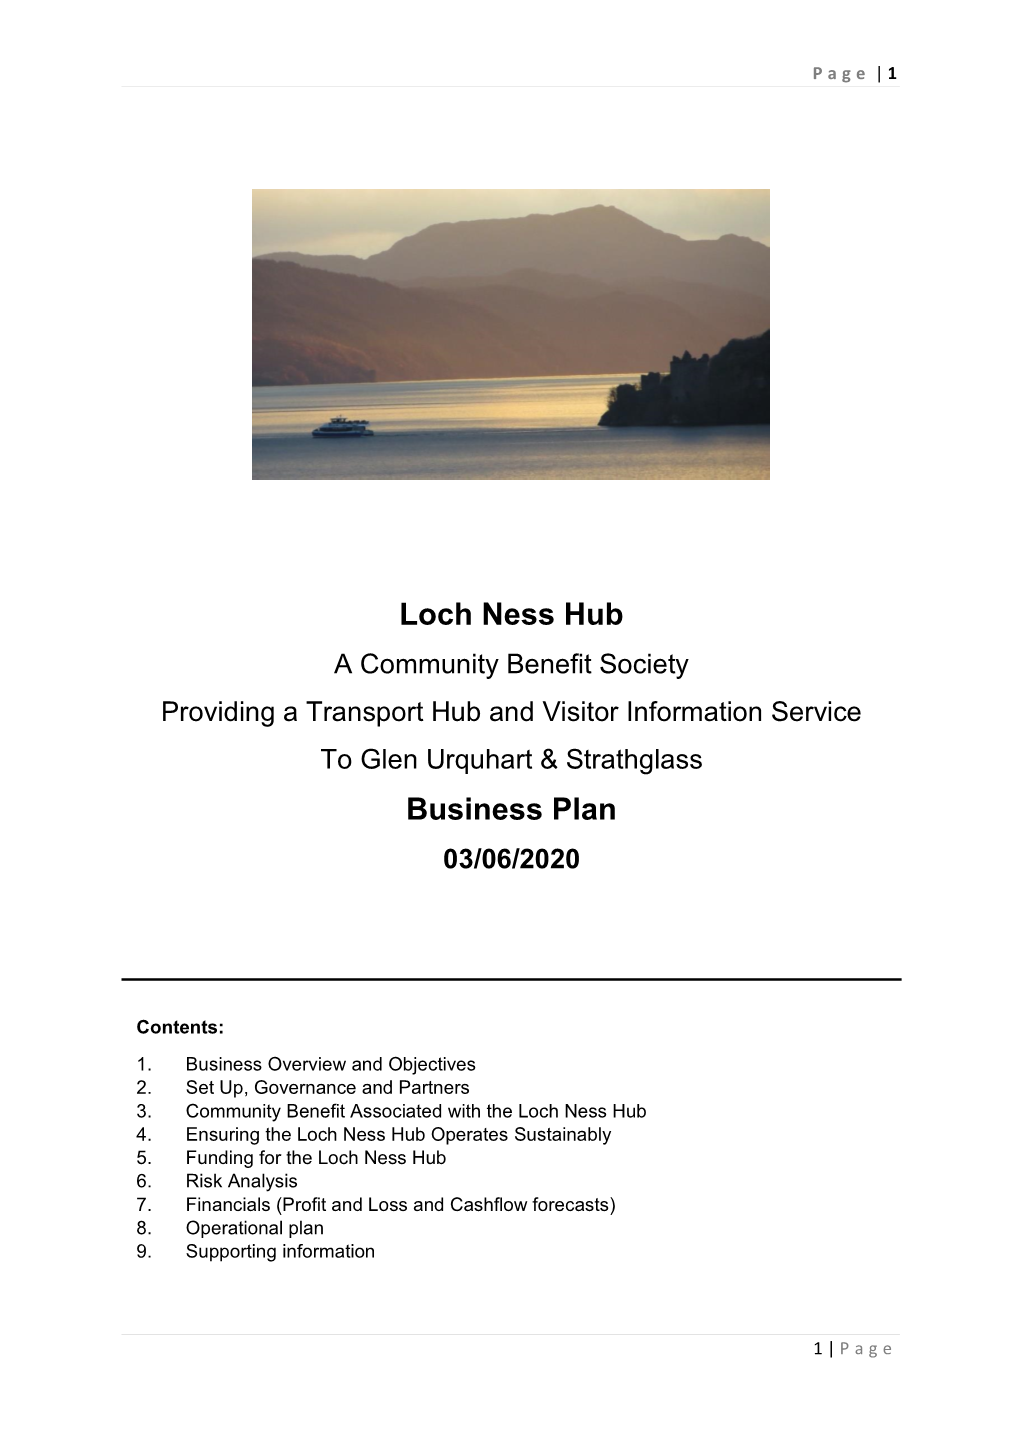 Loch Ness Hub Business Plan